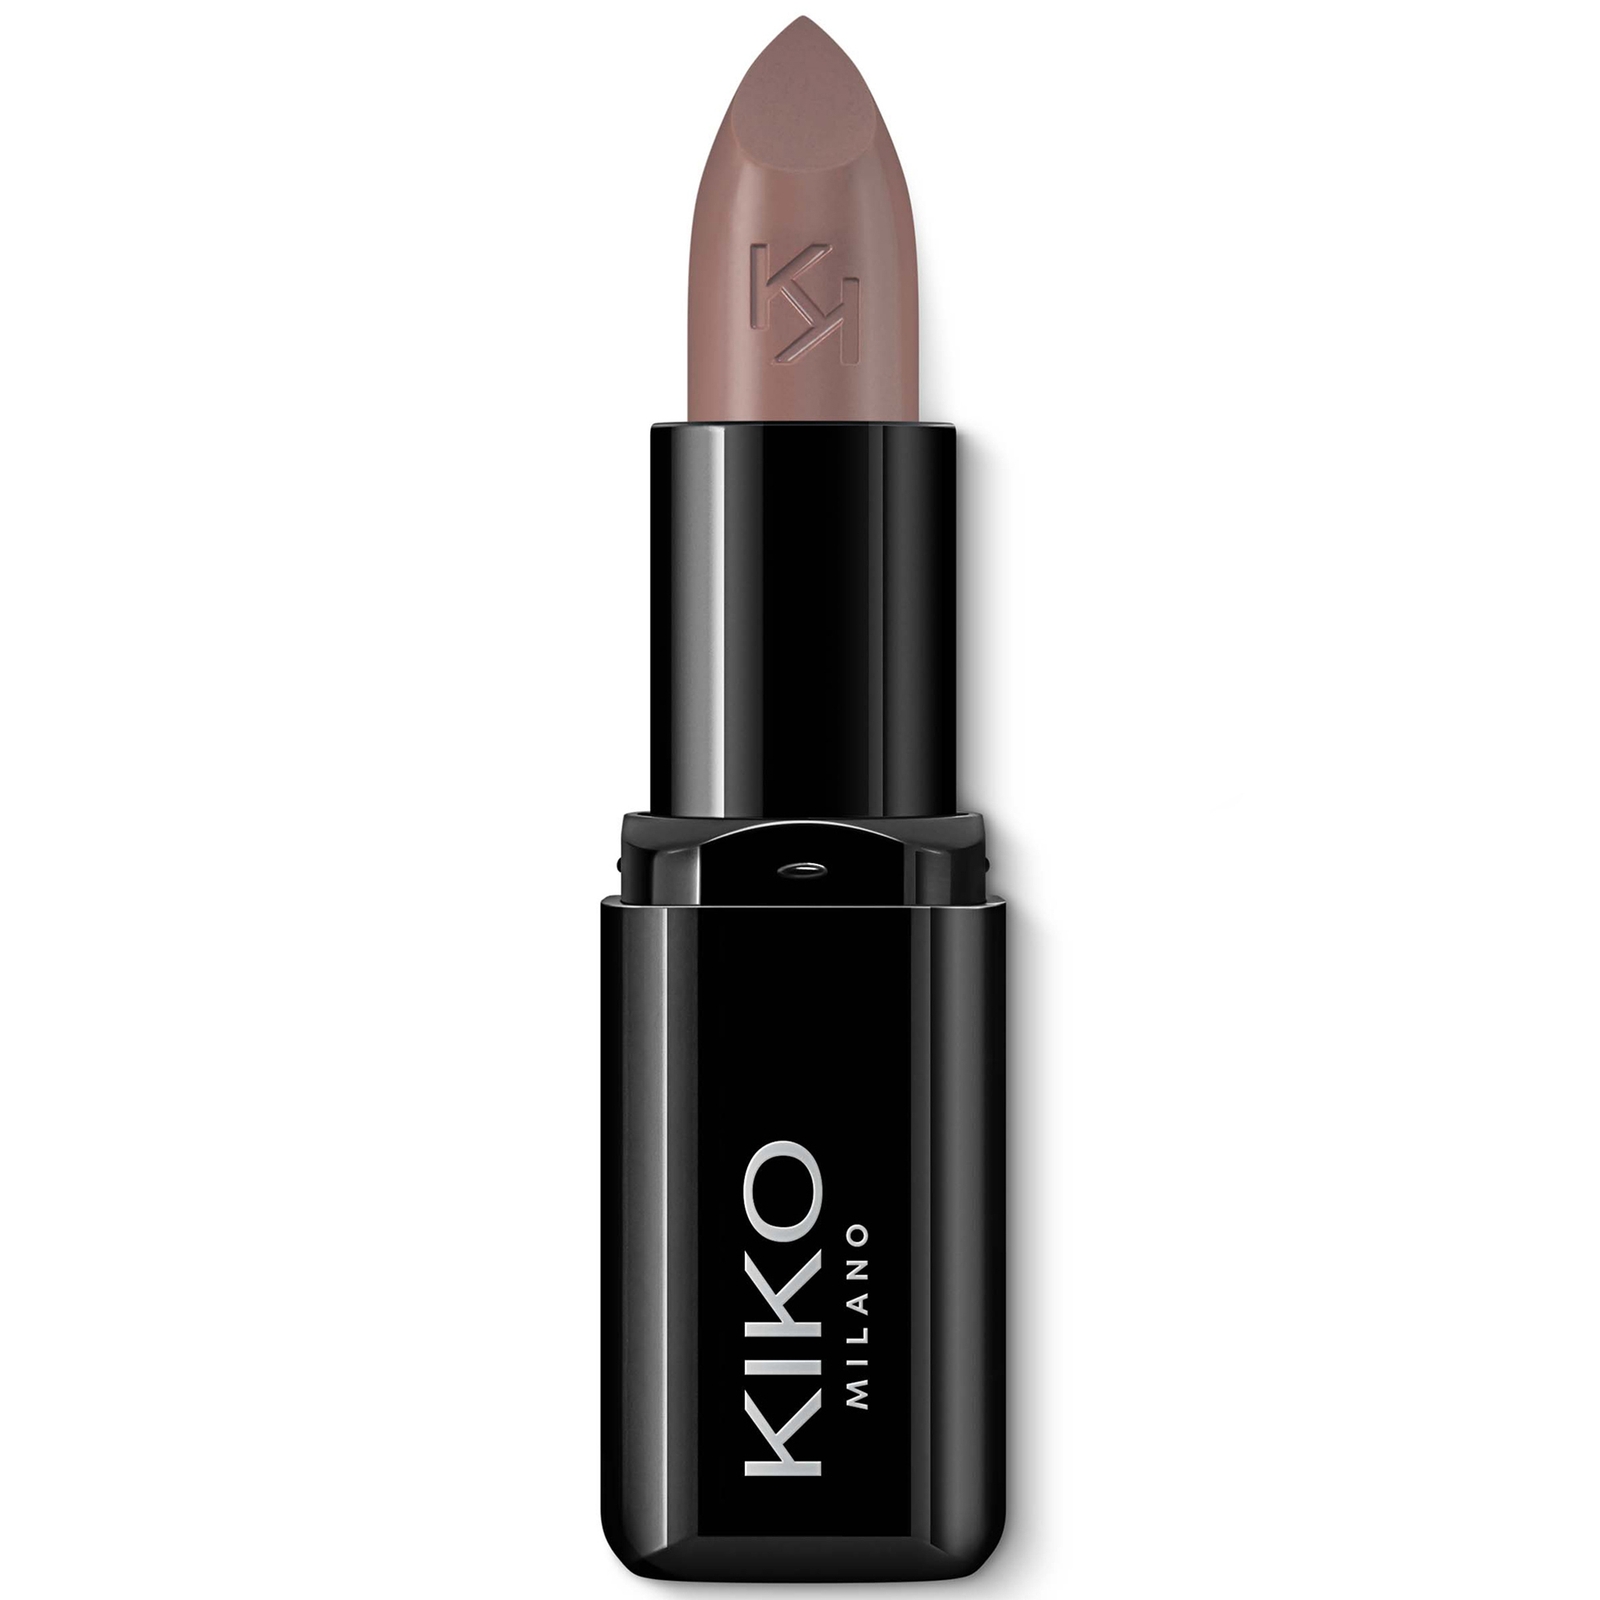 KIKO Milano Smart Fusion Lipstick 3g (Various Shades) - 436 Cold Brown